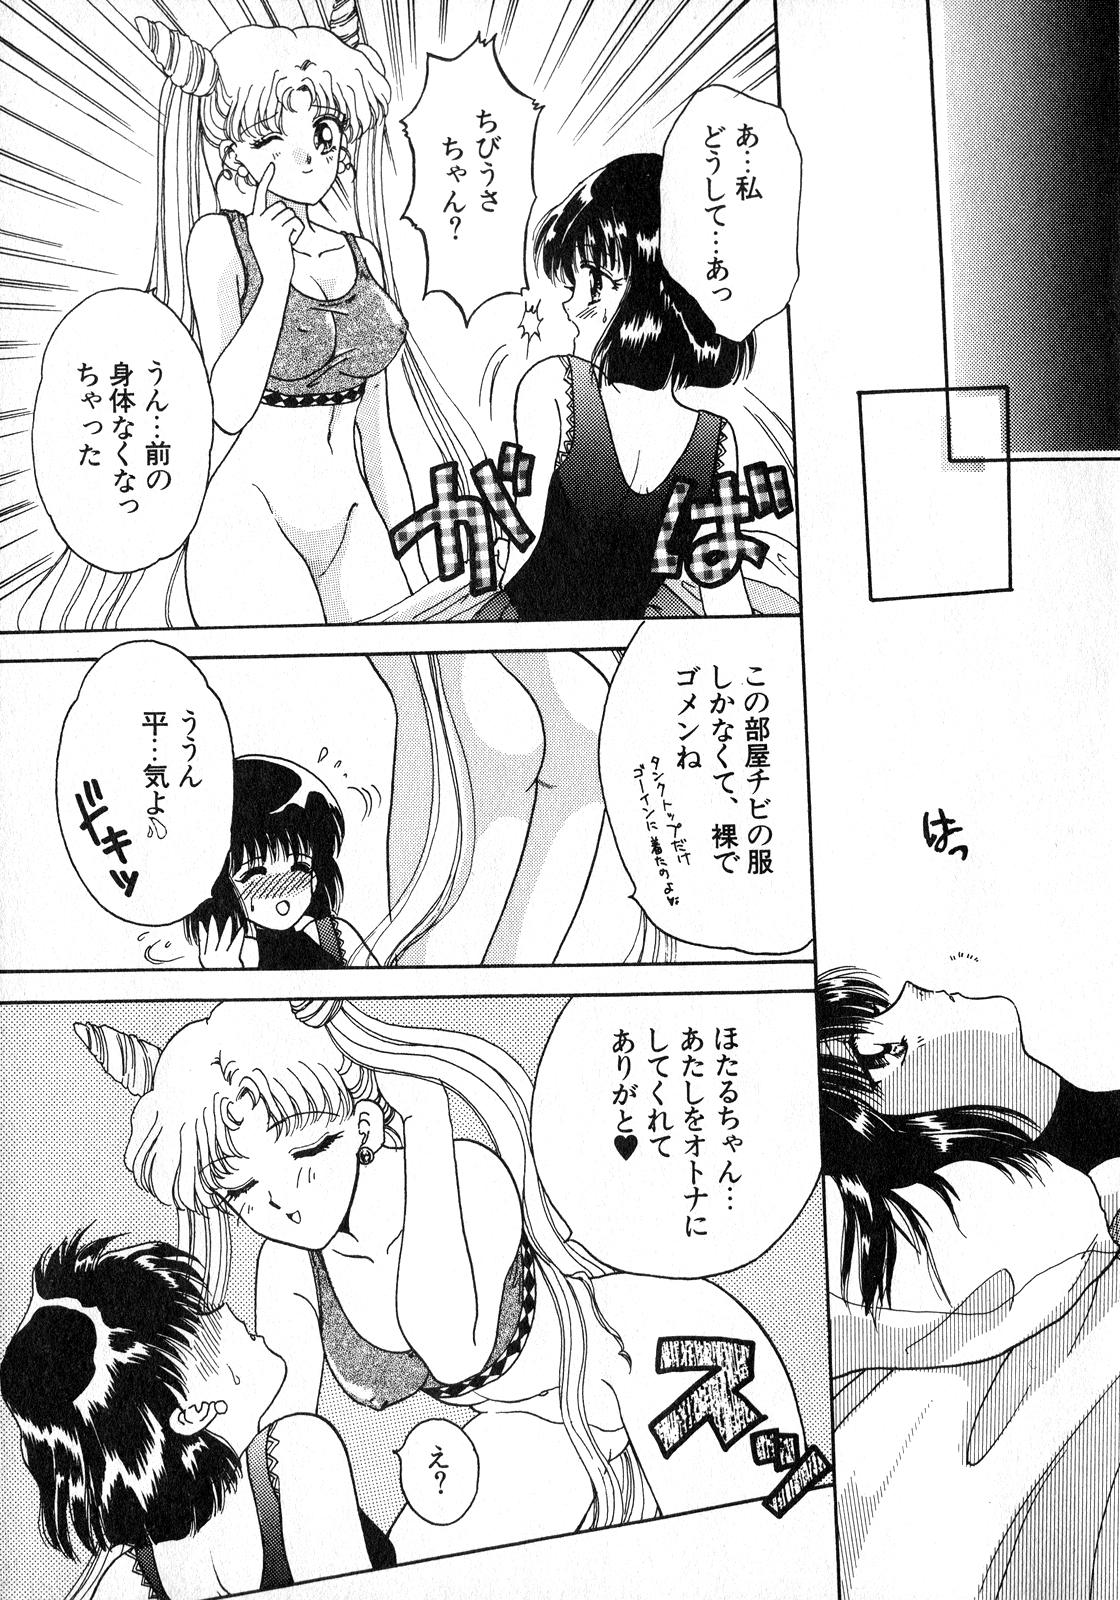 Butt Plug Lunatic Party 8 - Sailor moon Voyeur - Page 12